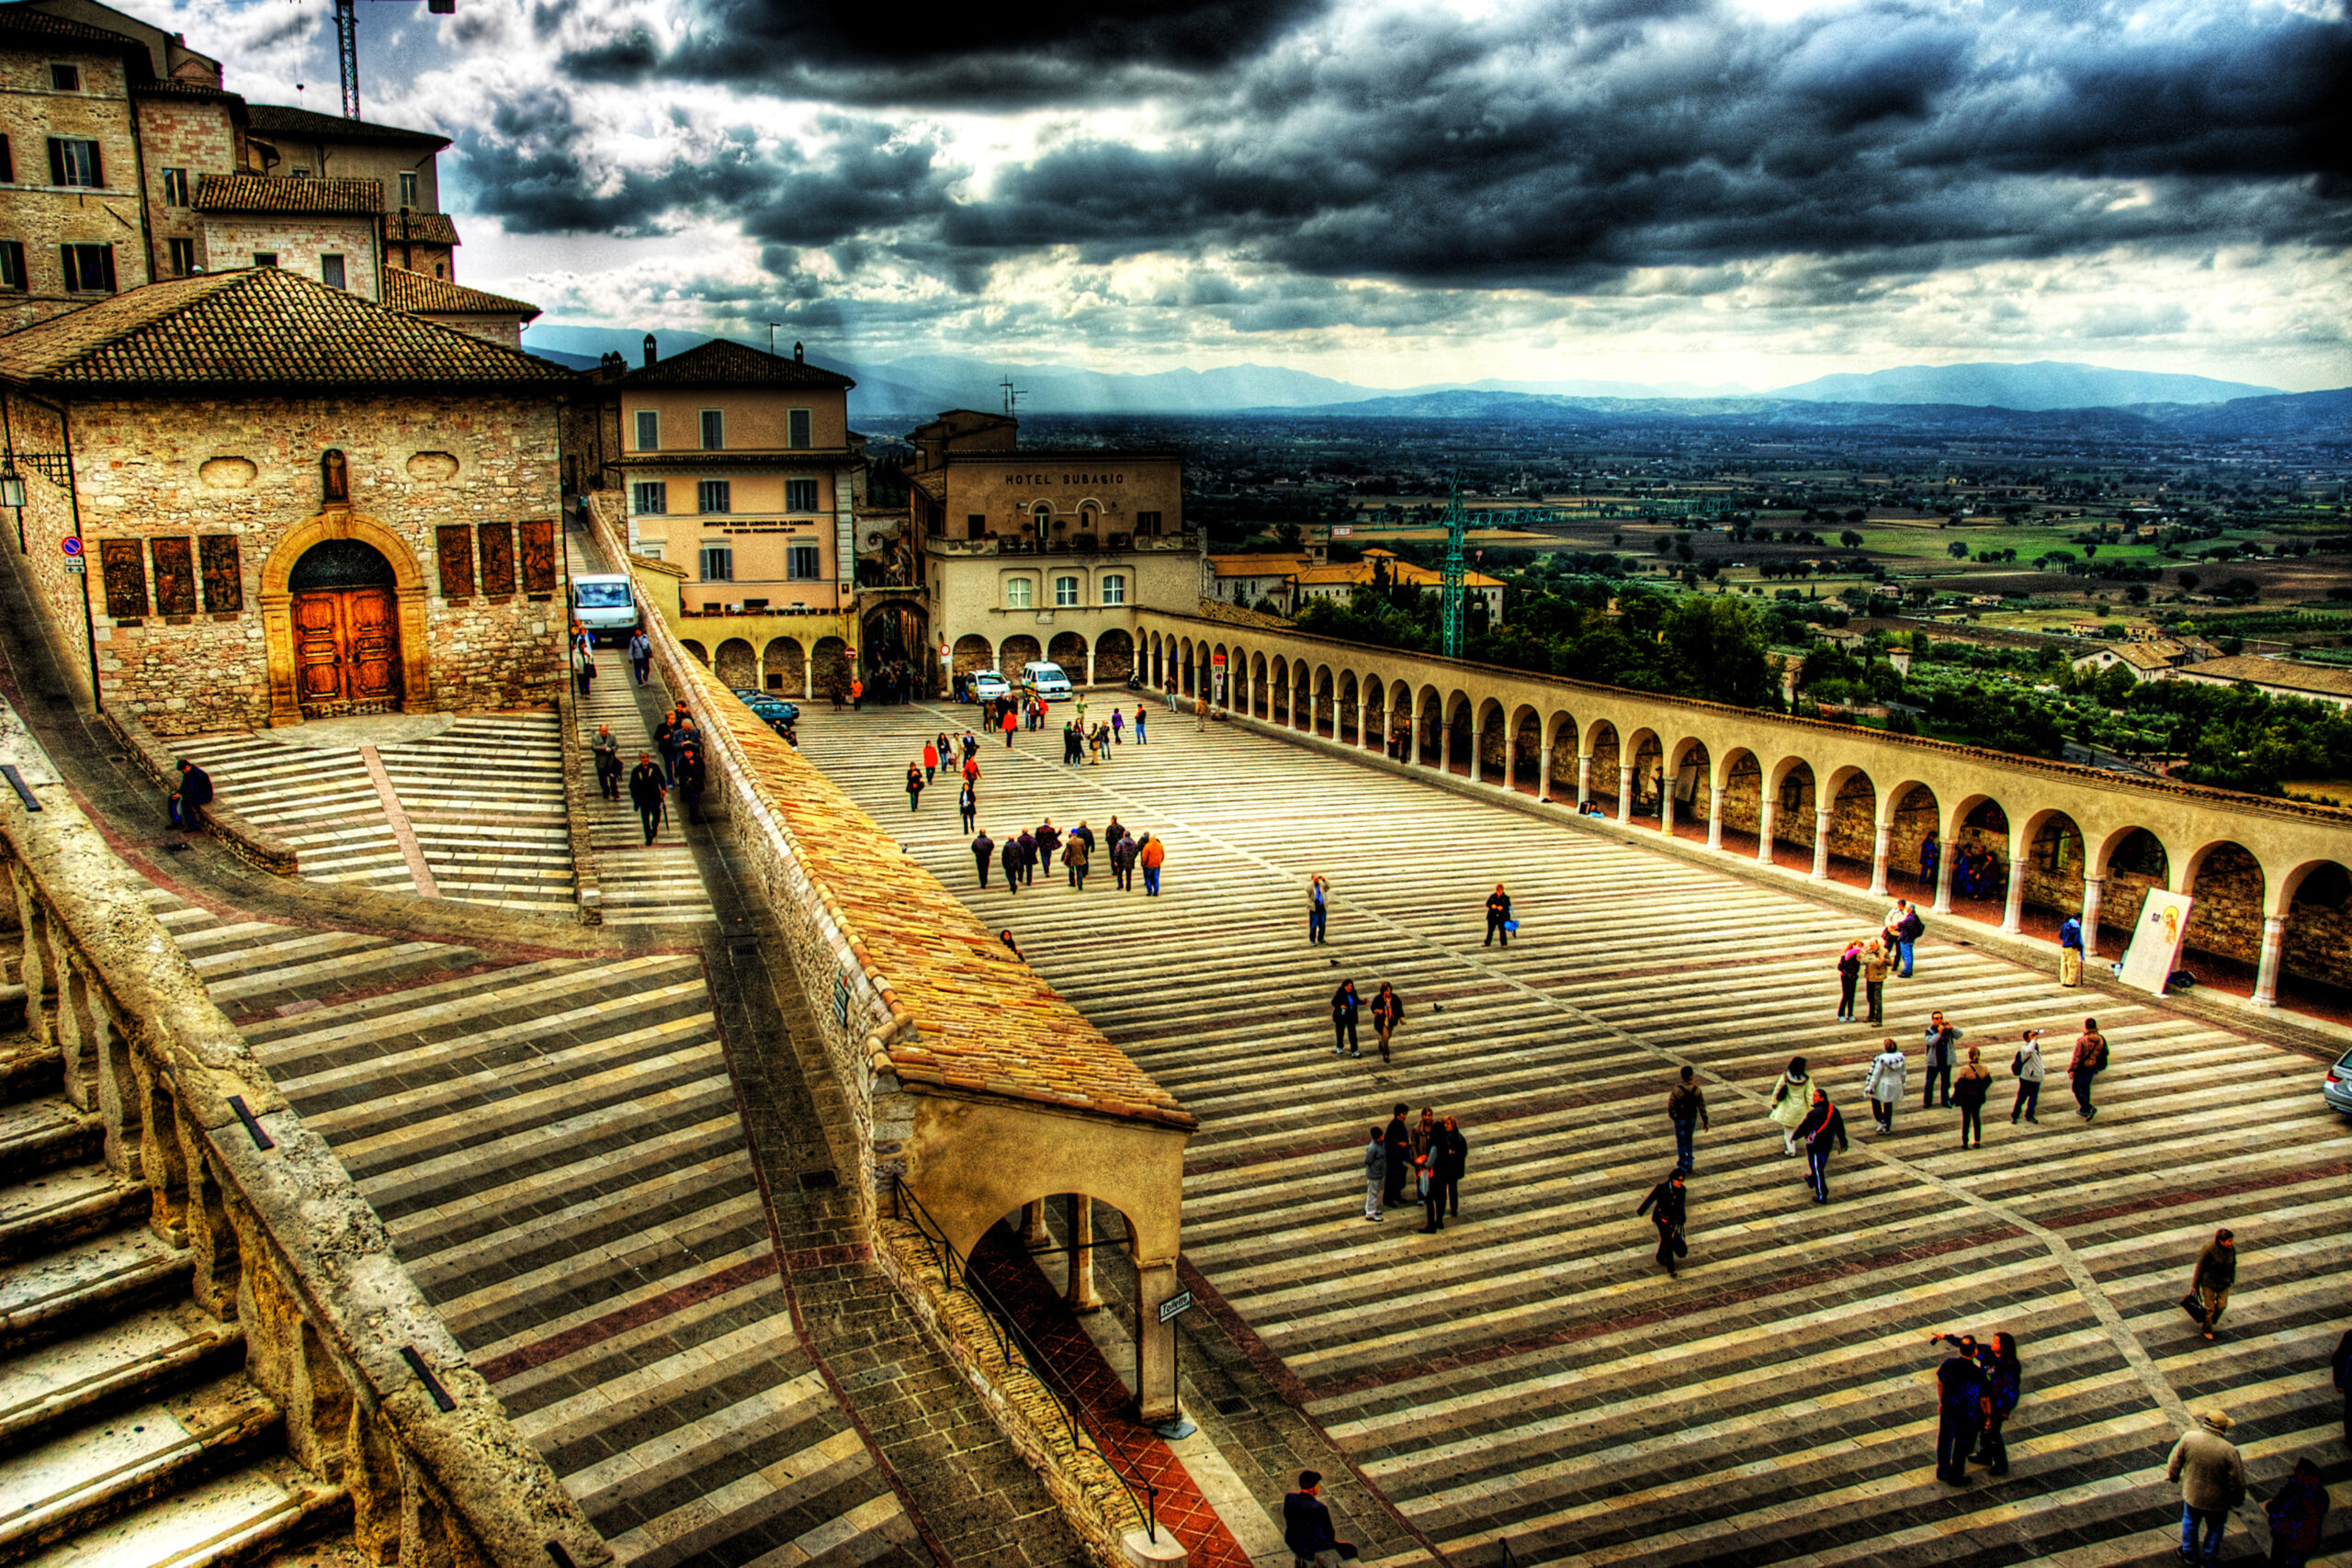 Motoevasioni ad Assisi nel centro storico in moto